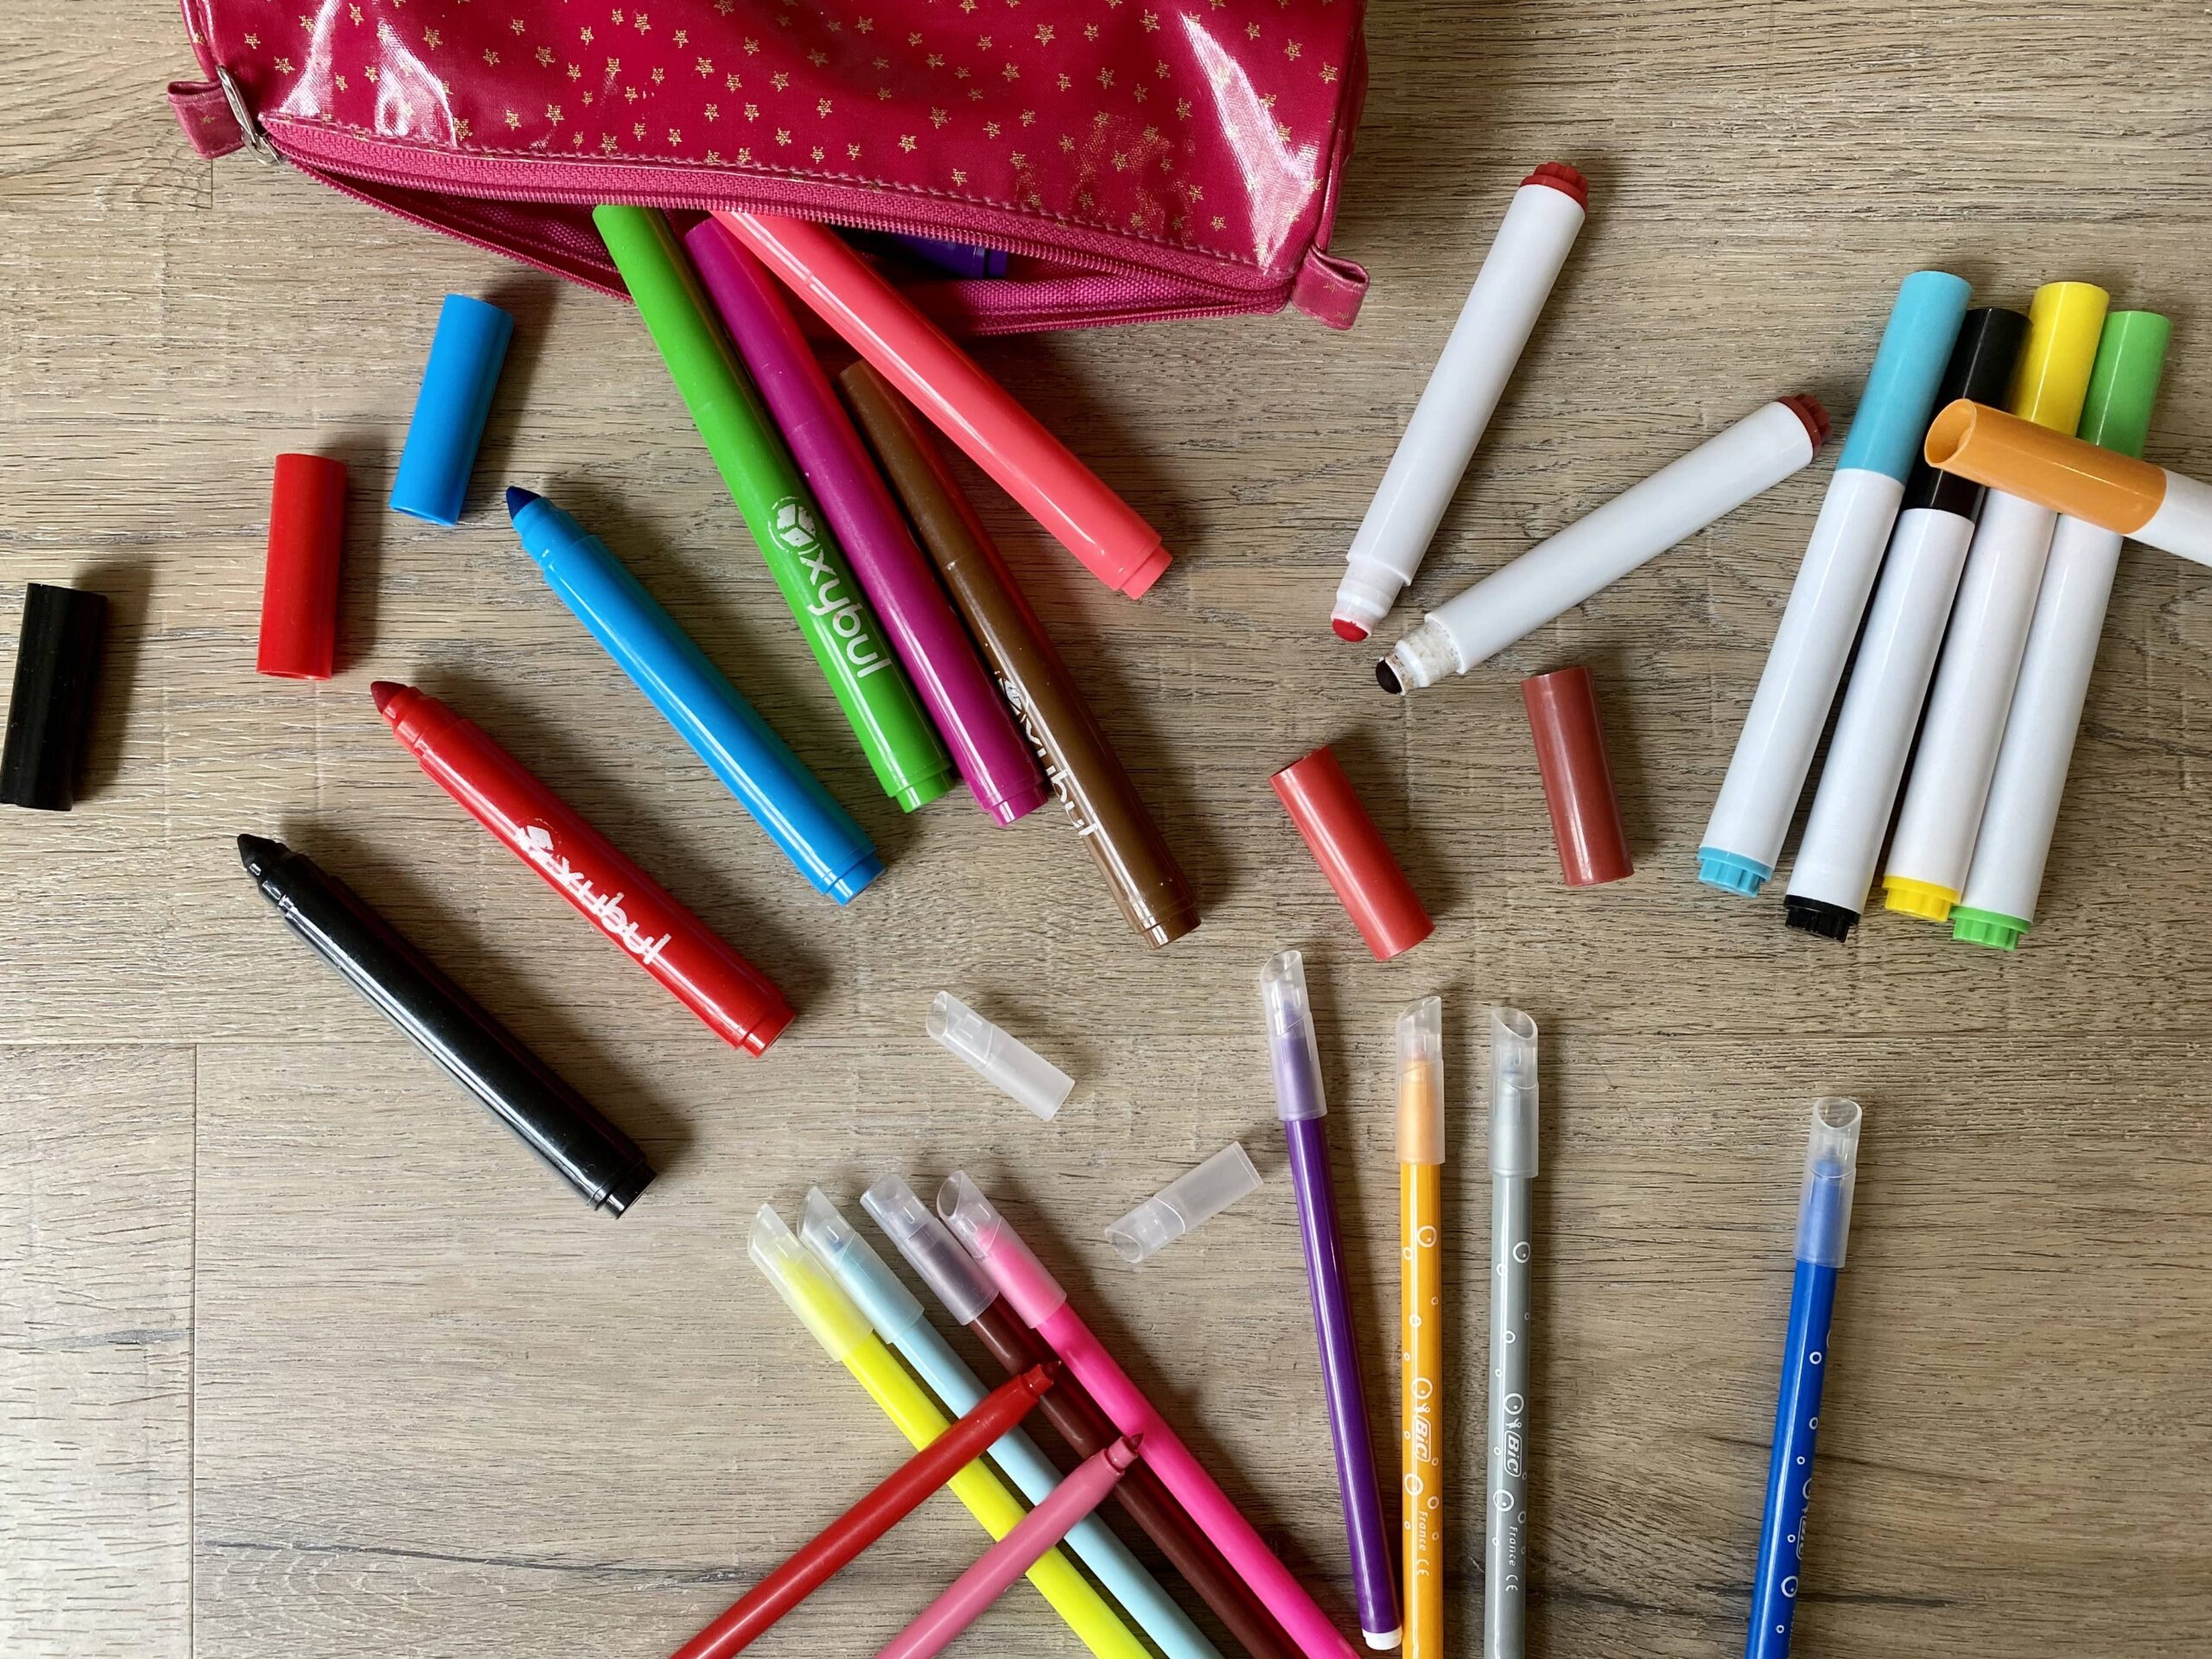 Guide du coloriage : bénéfices et guide d'achat des crayons par